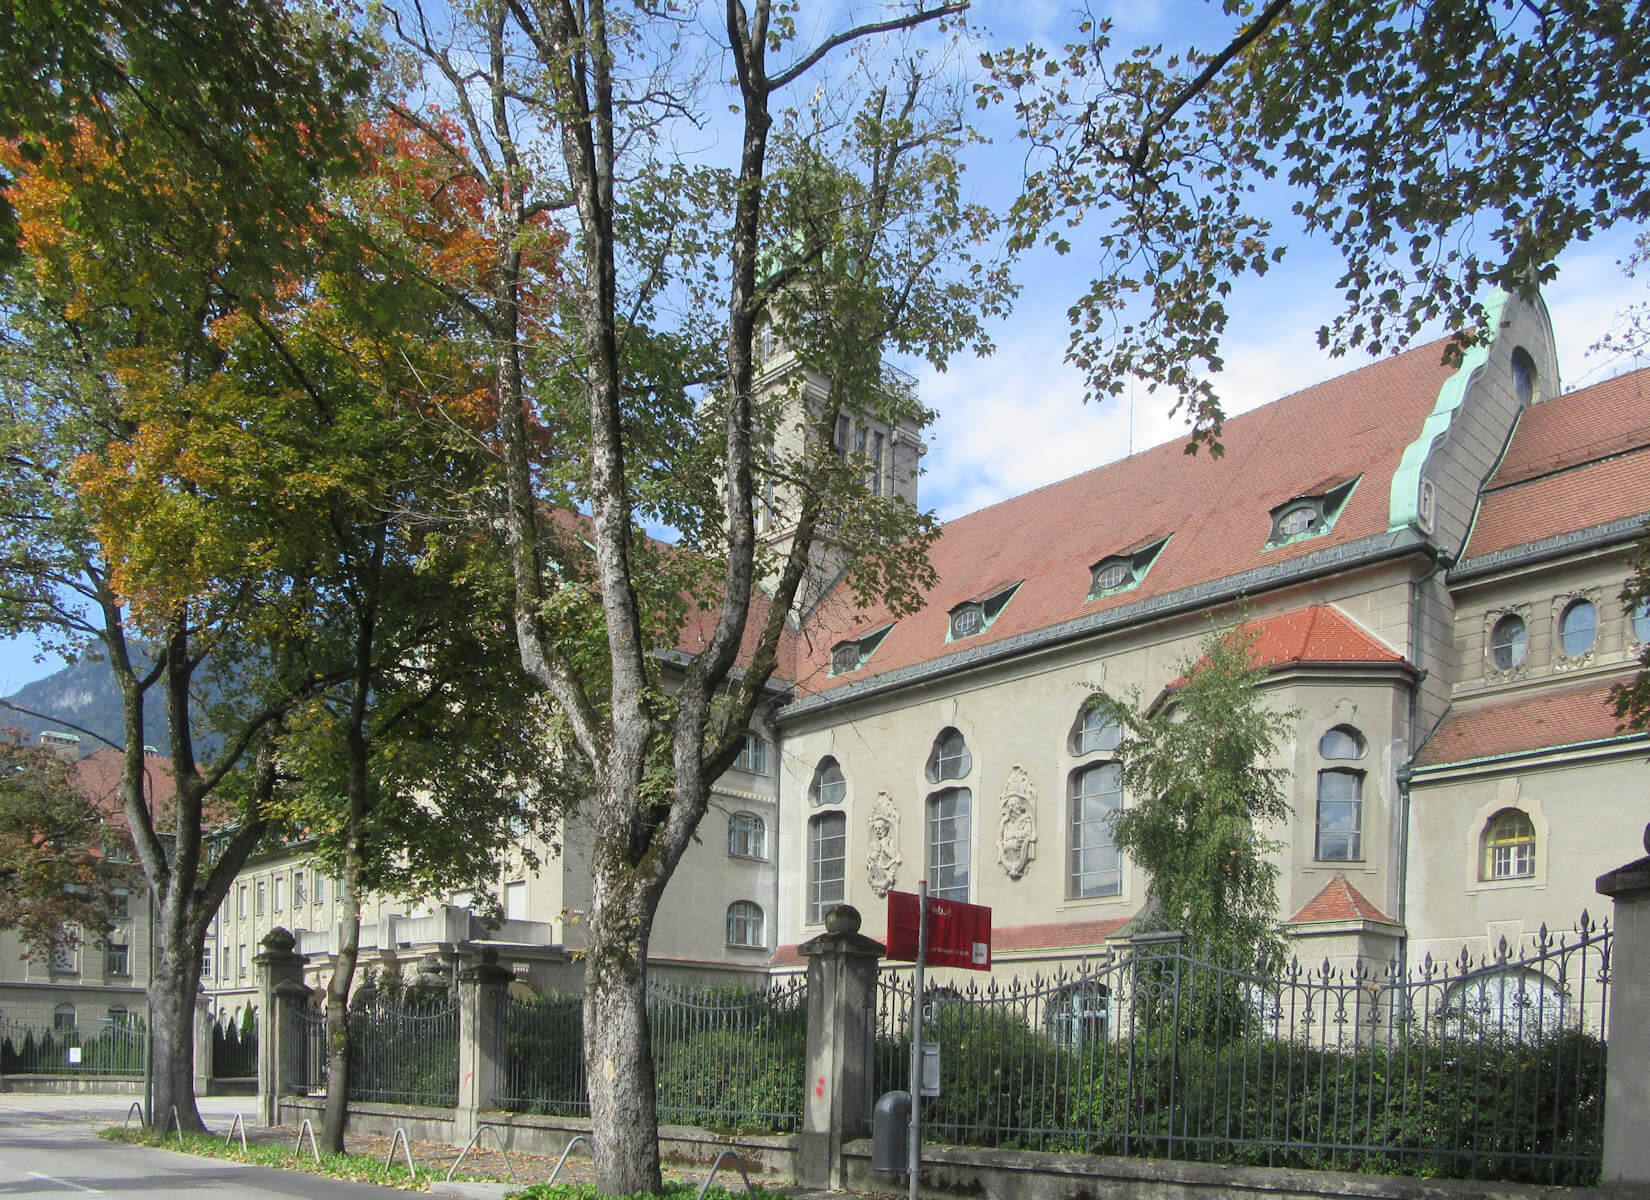 Das 1911 erbaute und 2013 wieder an seinen Ursprungsort zurück velegte Studienhaus Canisianum in Innsbruck